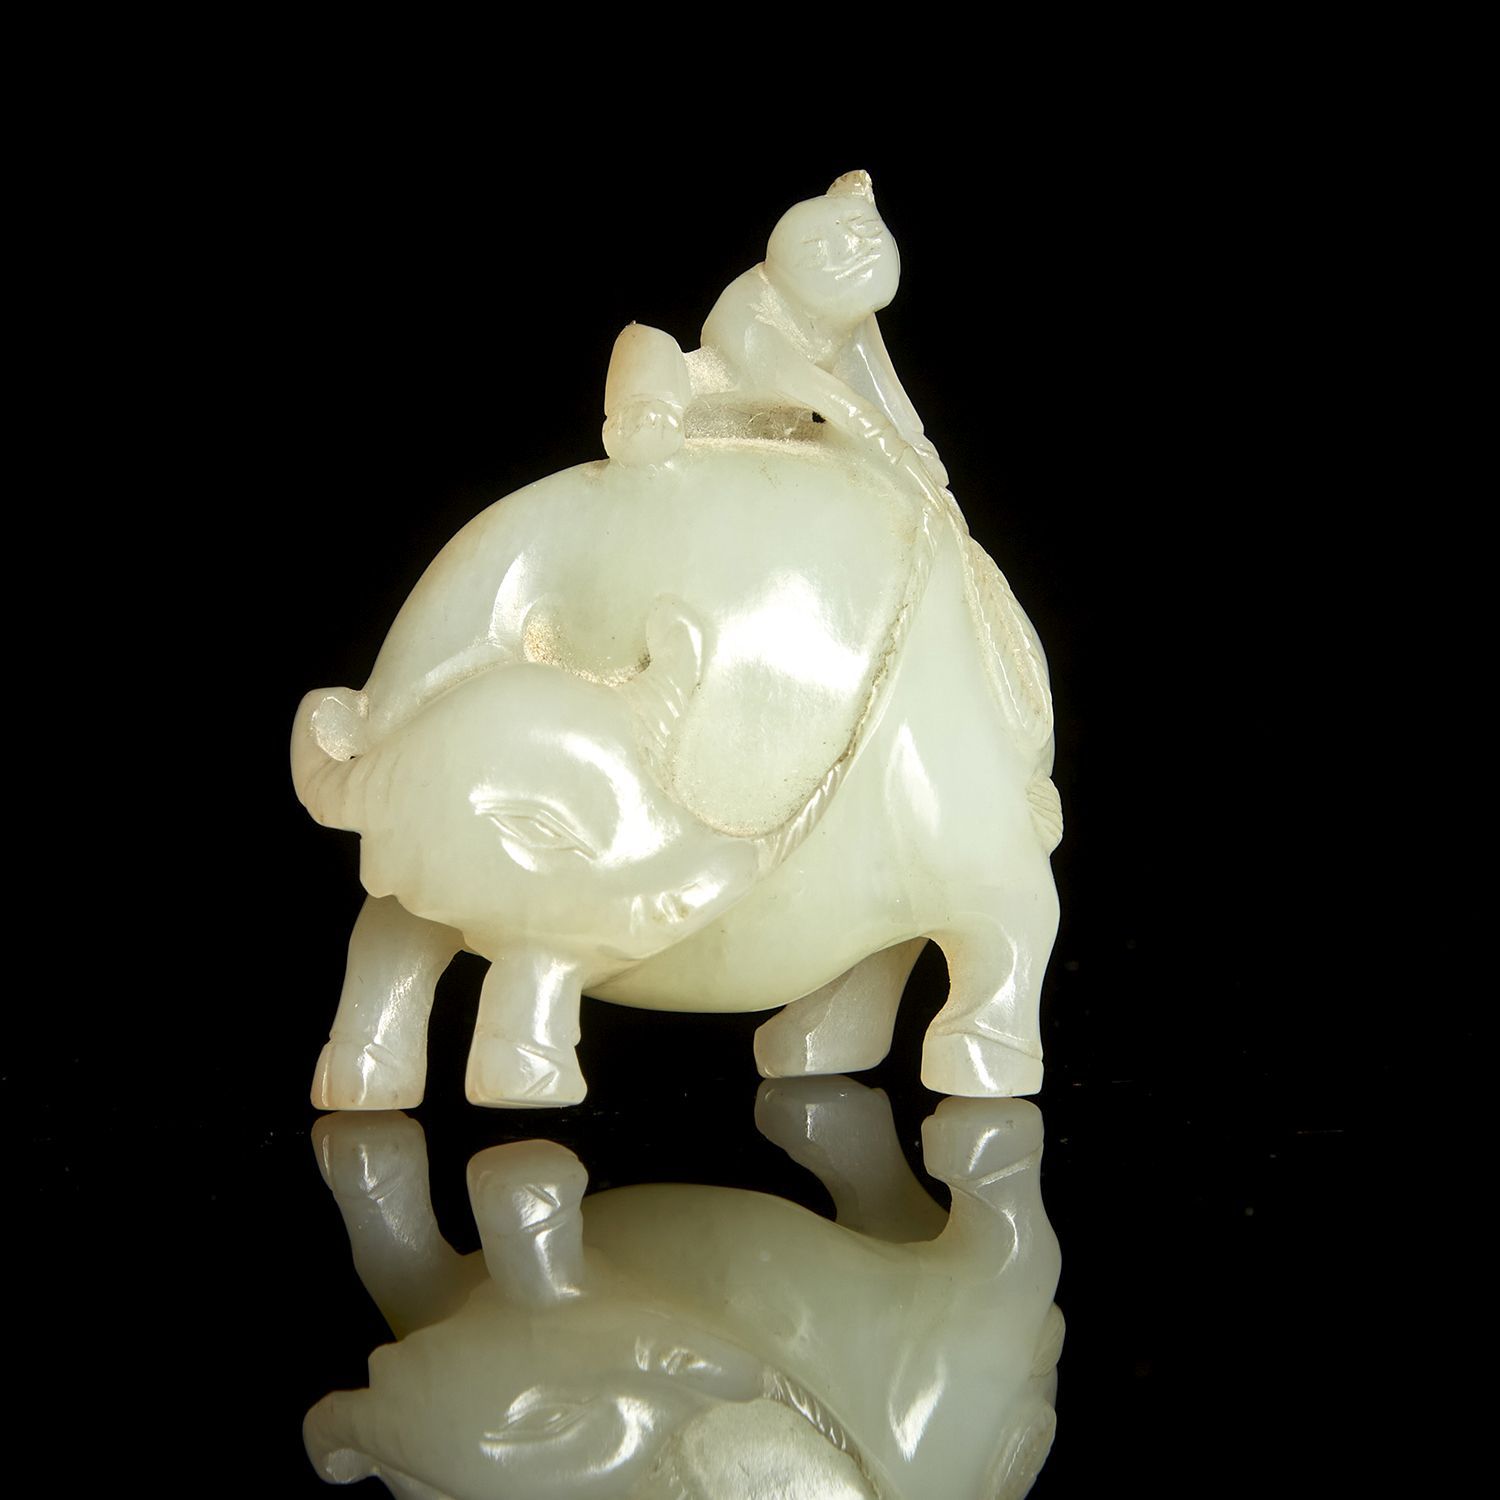 Null OGGETTO
Giada celadon nefrite decorata con un mandriano che tiene le redini&hellip;